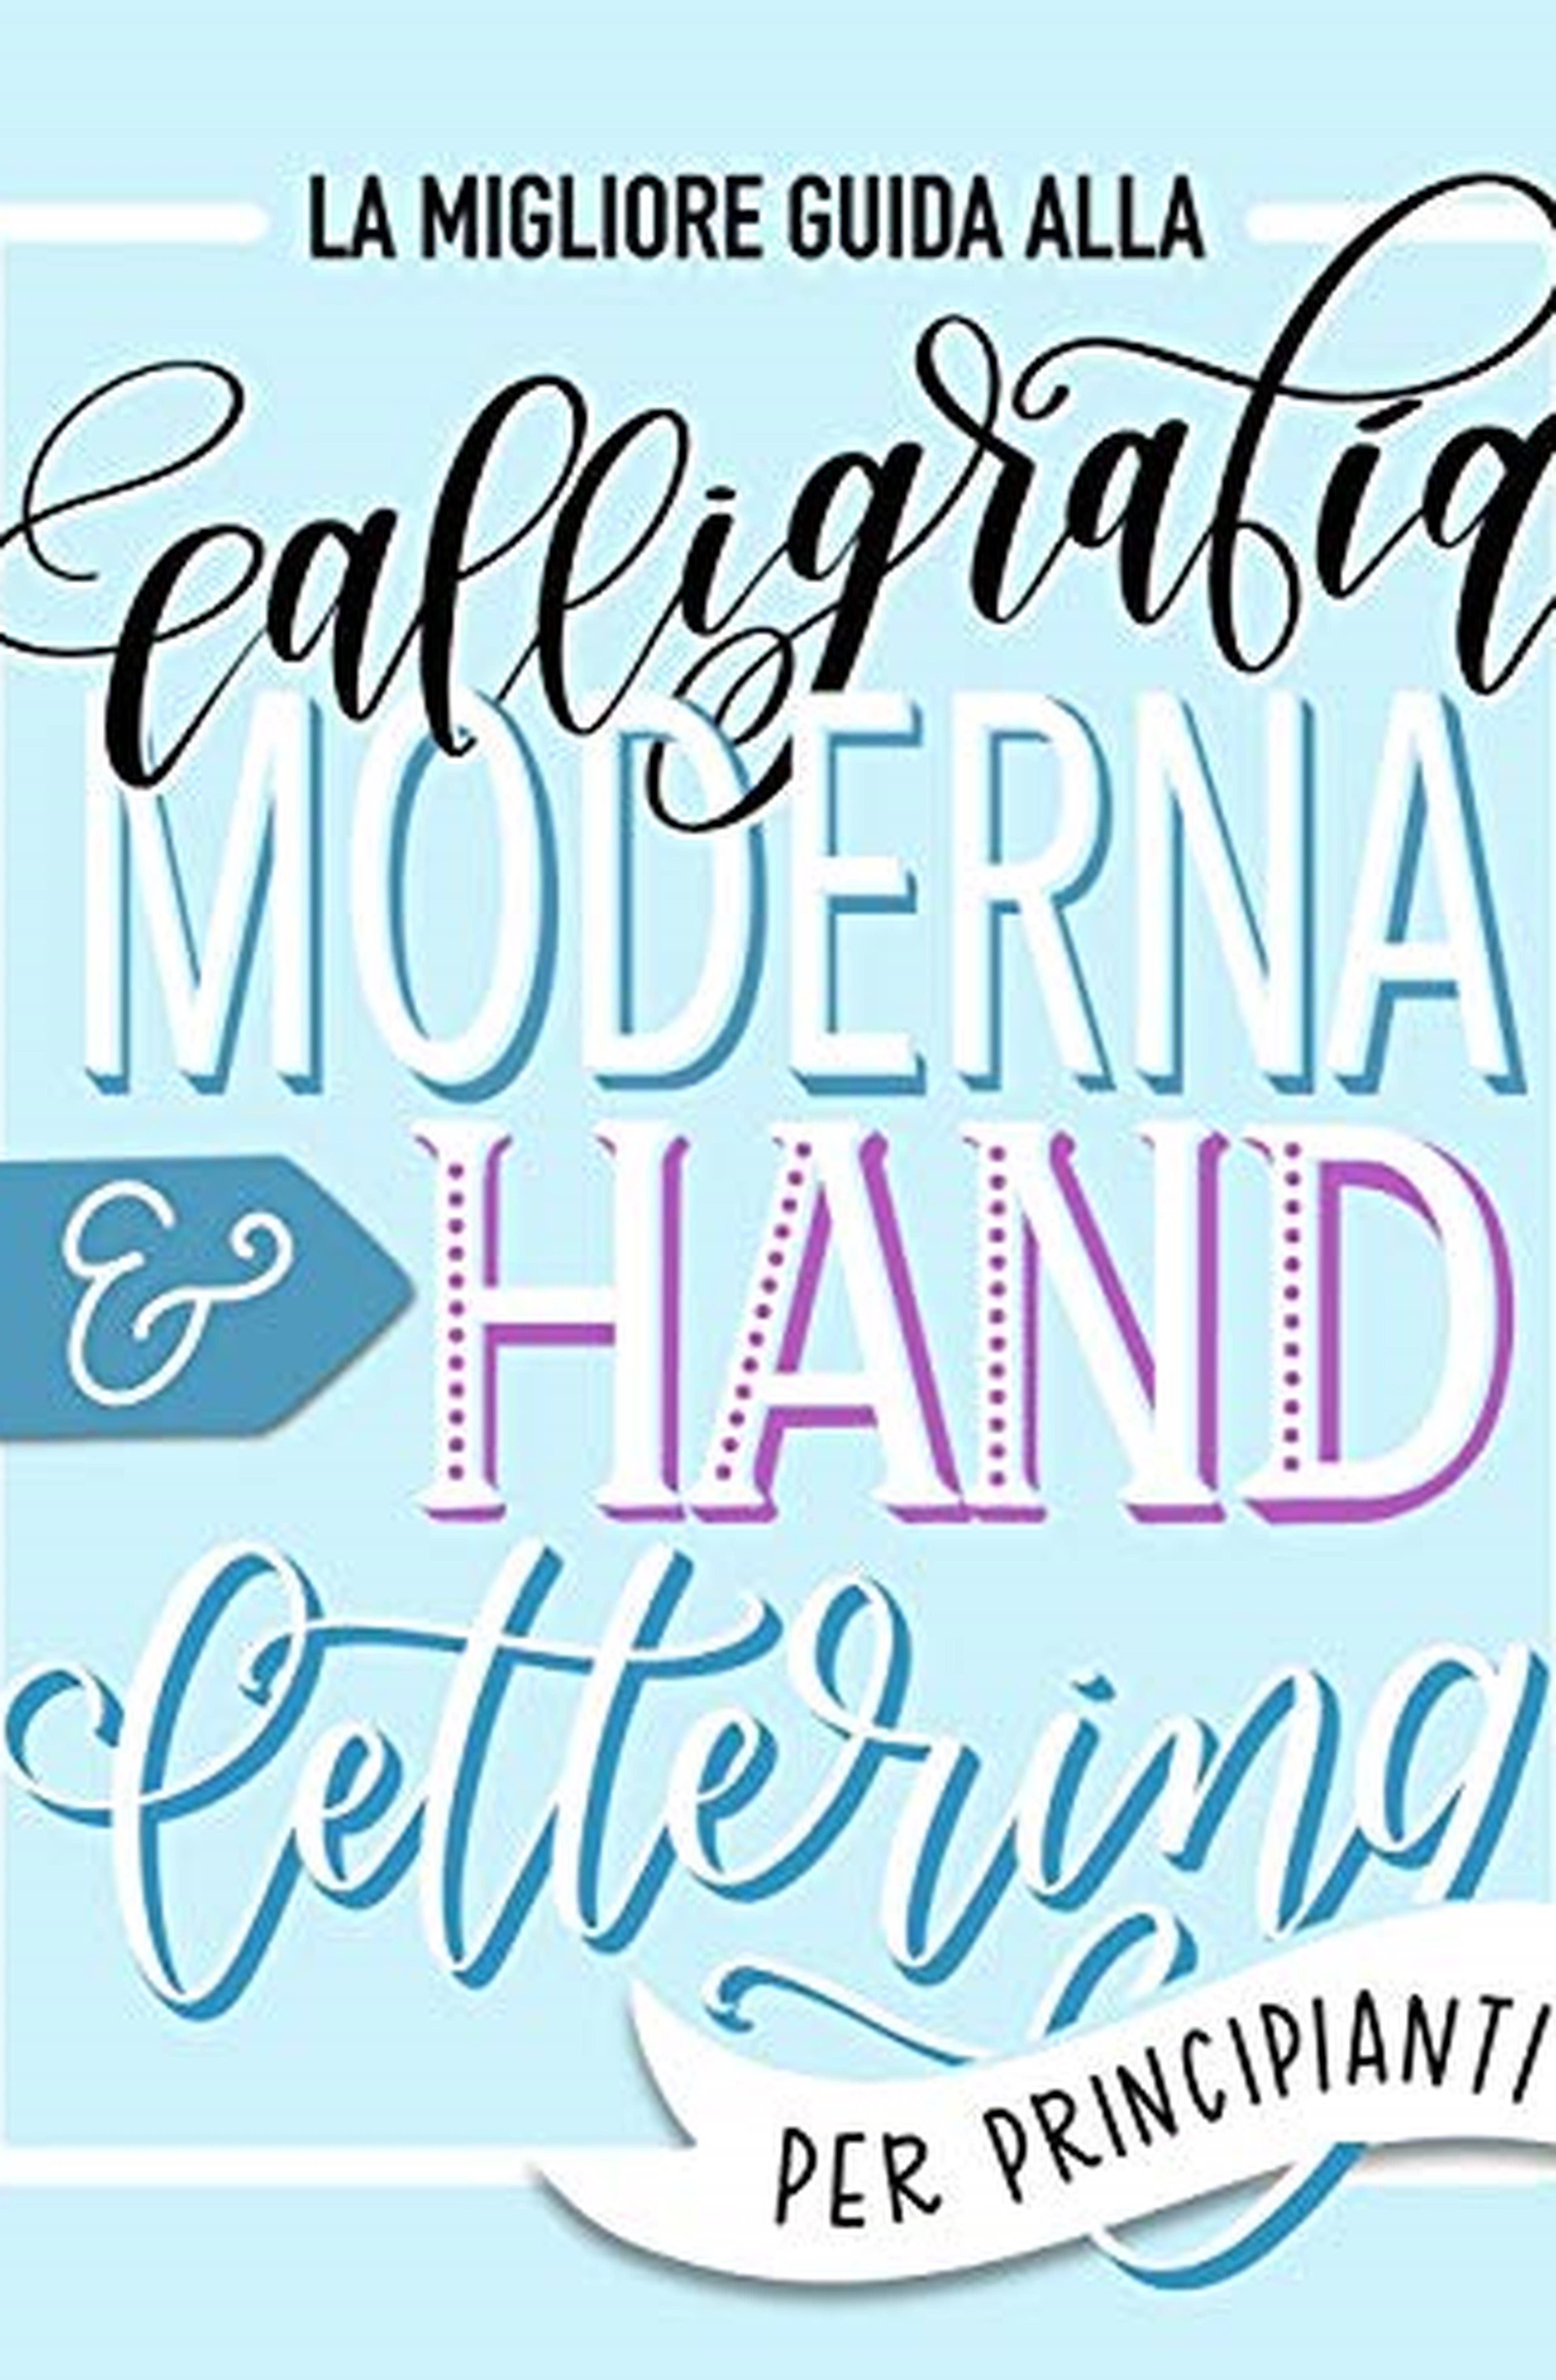 La migliore guida alla calligrafia moderna & hand lettering per principianti: Impara l'handlettering: un manuale con consigli, tecniche, pagine per l'allenamento e progetti